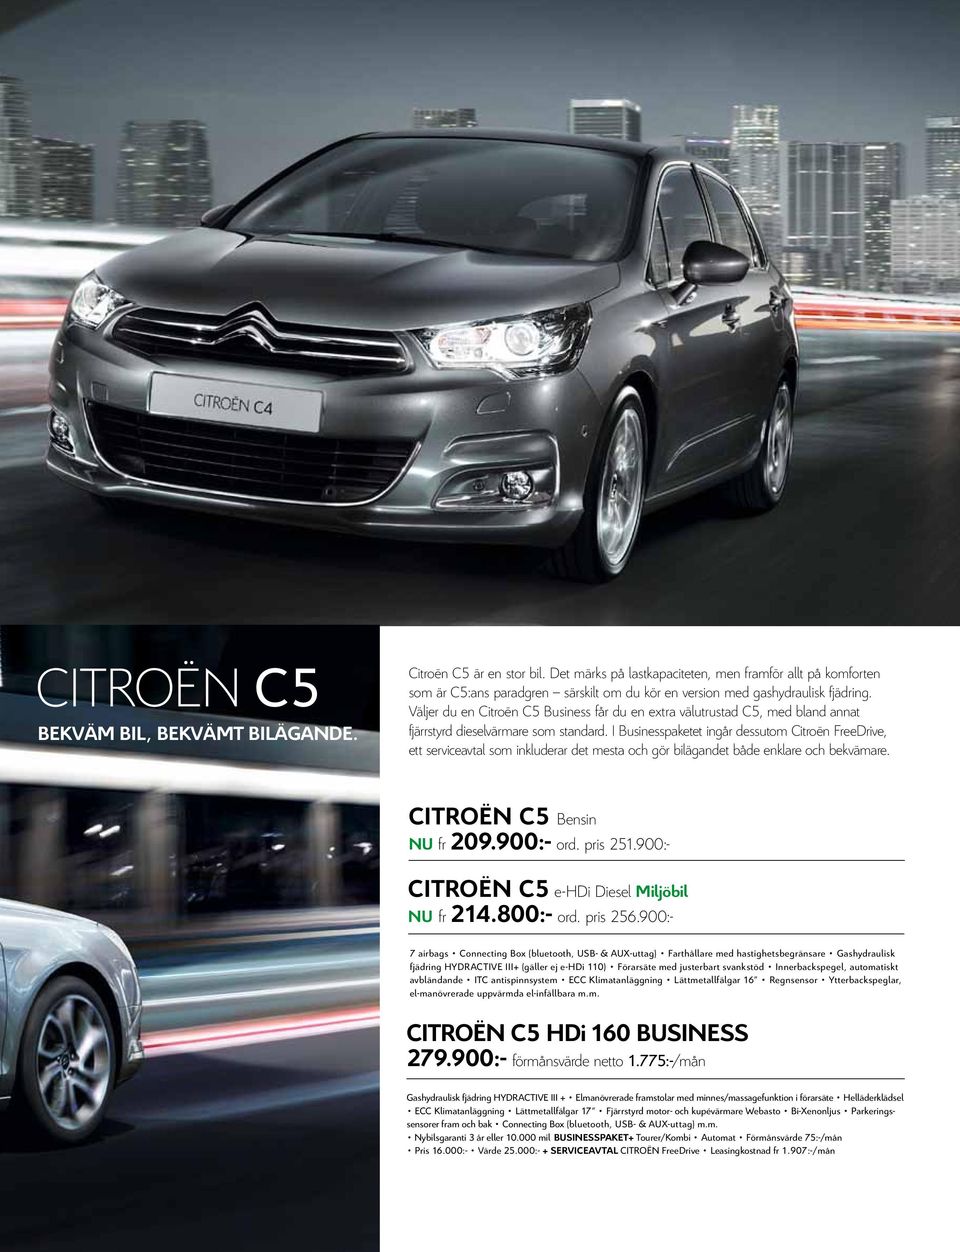 Väljer du en Citroën C5 Business får du en extra välutrustad C5, med bland annat fjärrstyrd dieselvärmare som standard.